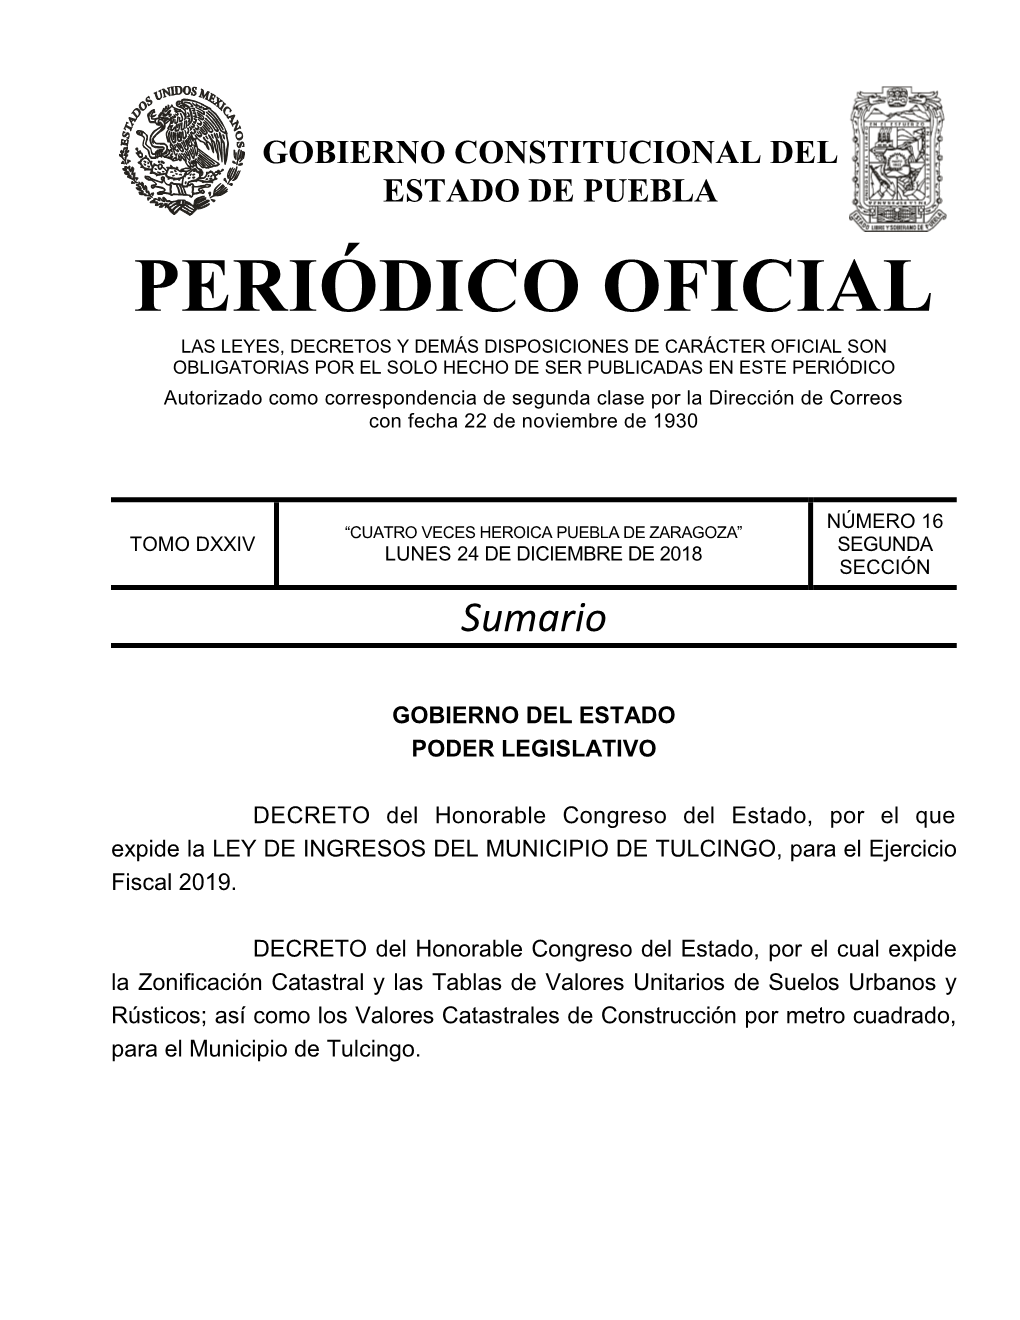 LEY DE INGRESOS DEL MUNICIPIO DE TULCINGO, Para El Ejercicio Fiscal 2019